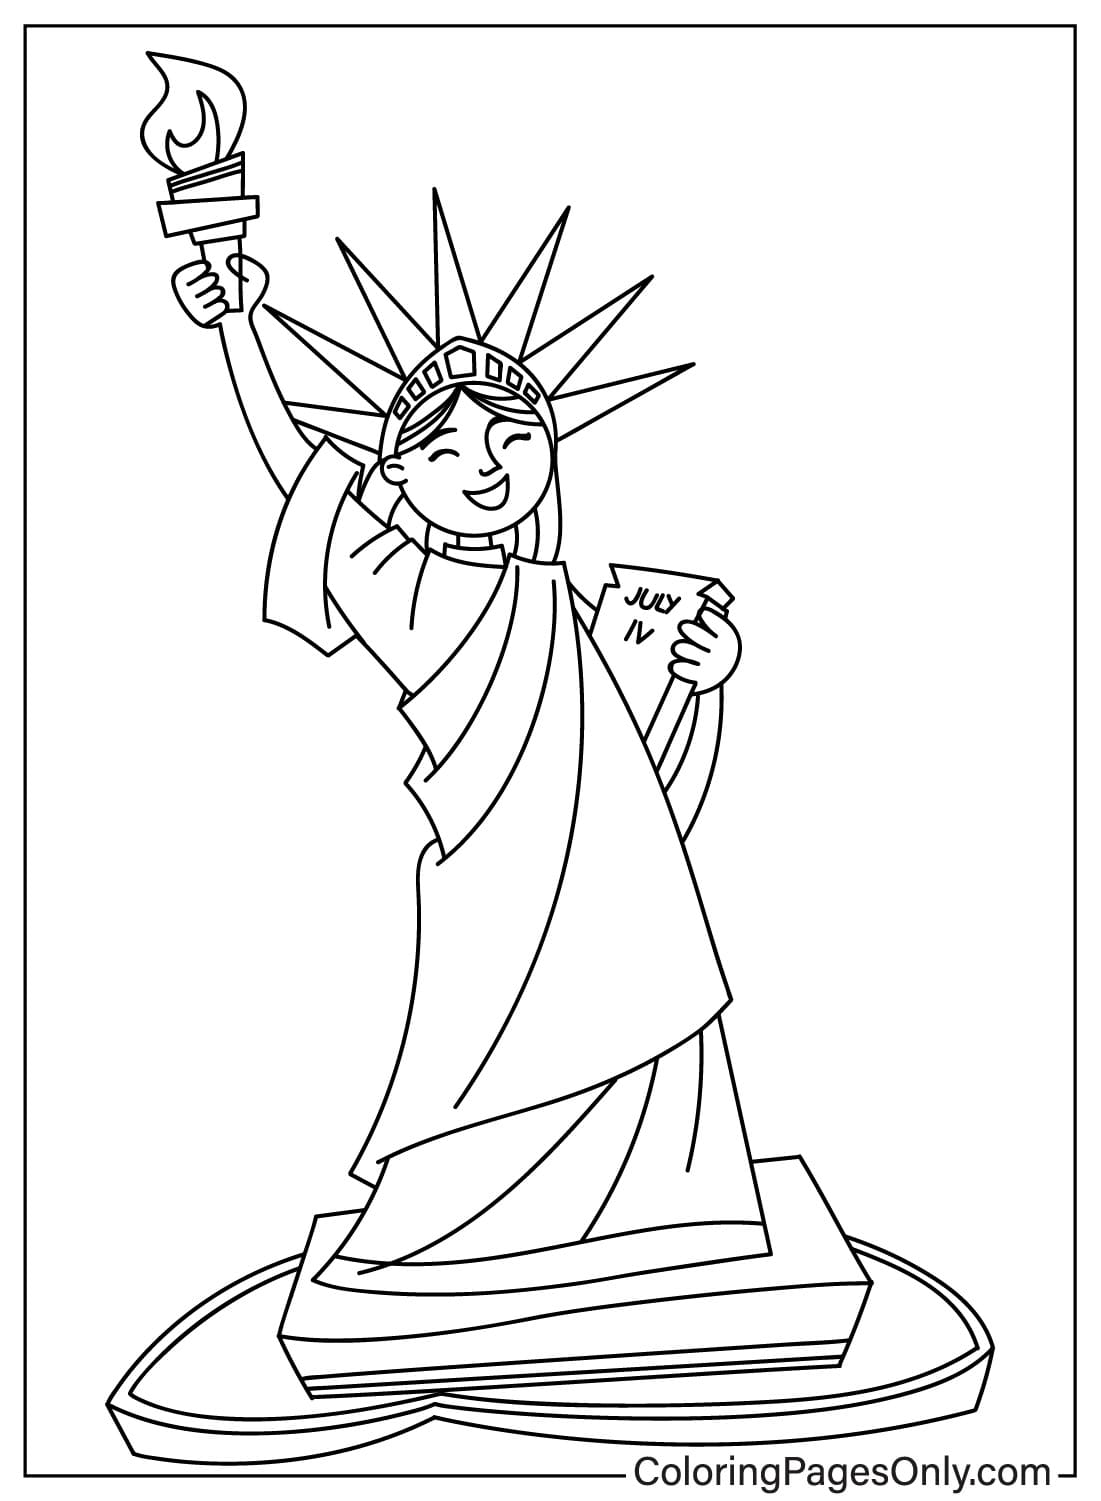 Disegni da colorare Statua della Libertà da scaricare